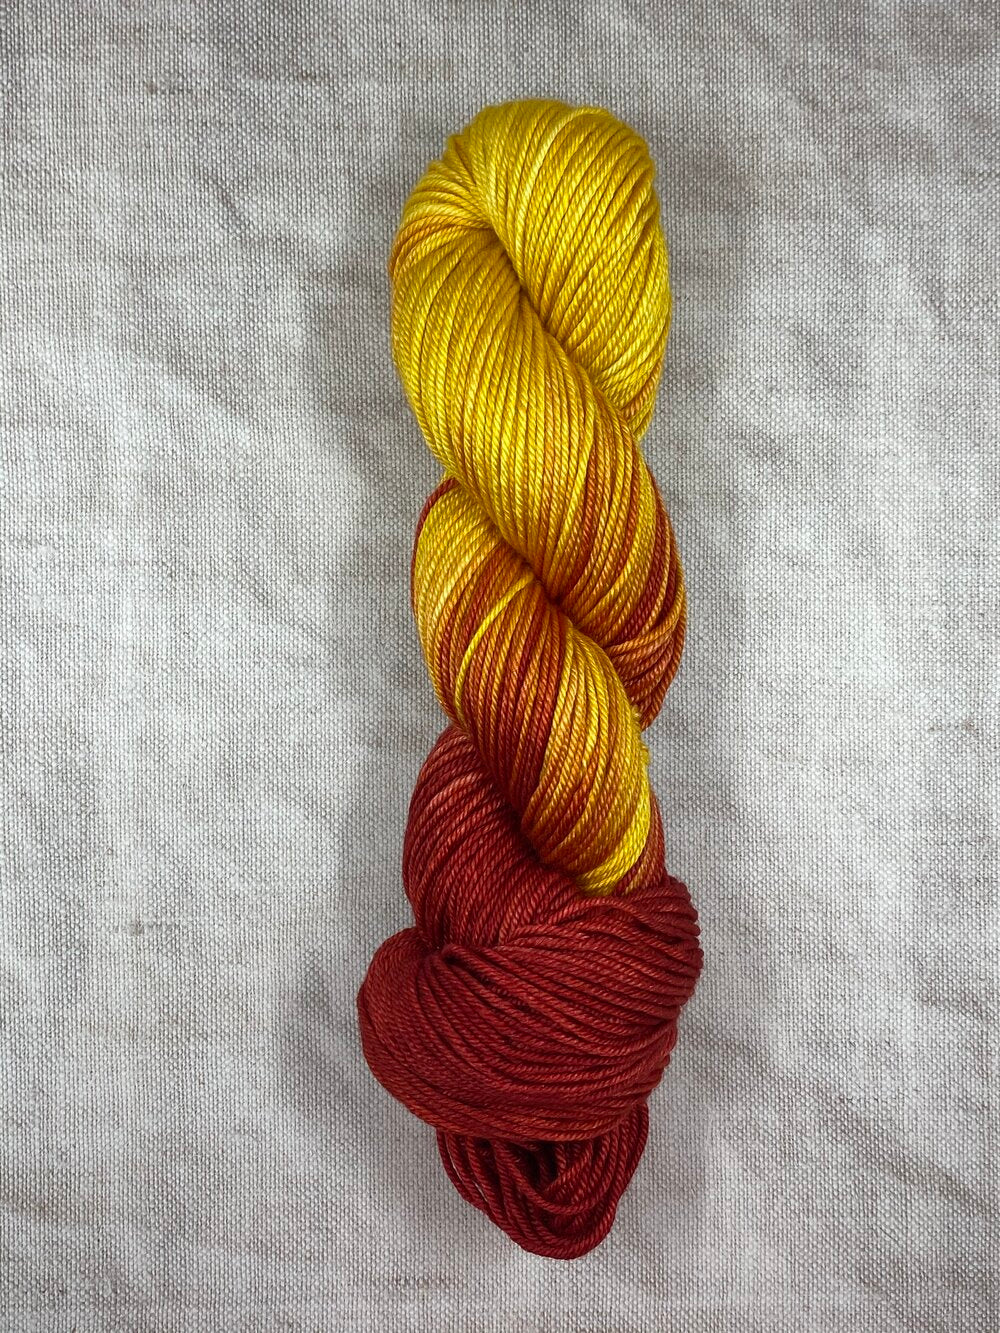 yellow orange and red silk merino wool hand dyed yarn